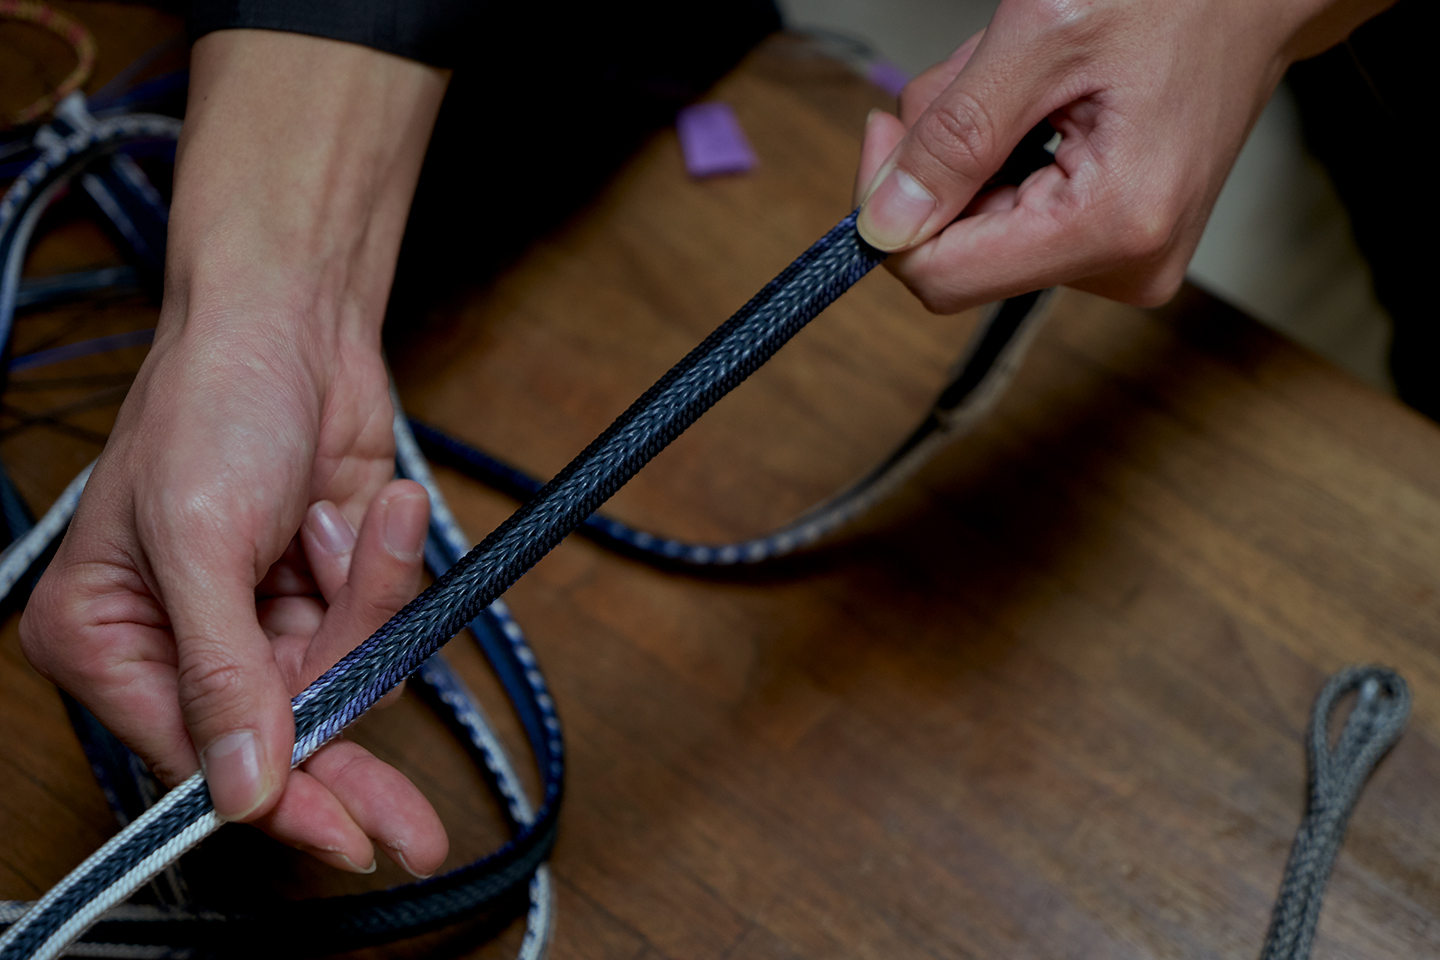 【Edo Tokyo Rethink】Atelier Ryukobo et ses cordons tressés kumihimo : le charme des cordons kumihimo, entrelacs du passé et de l’avenir.